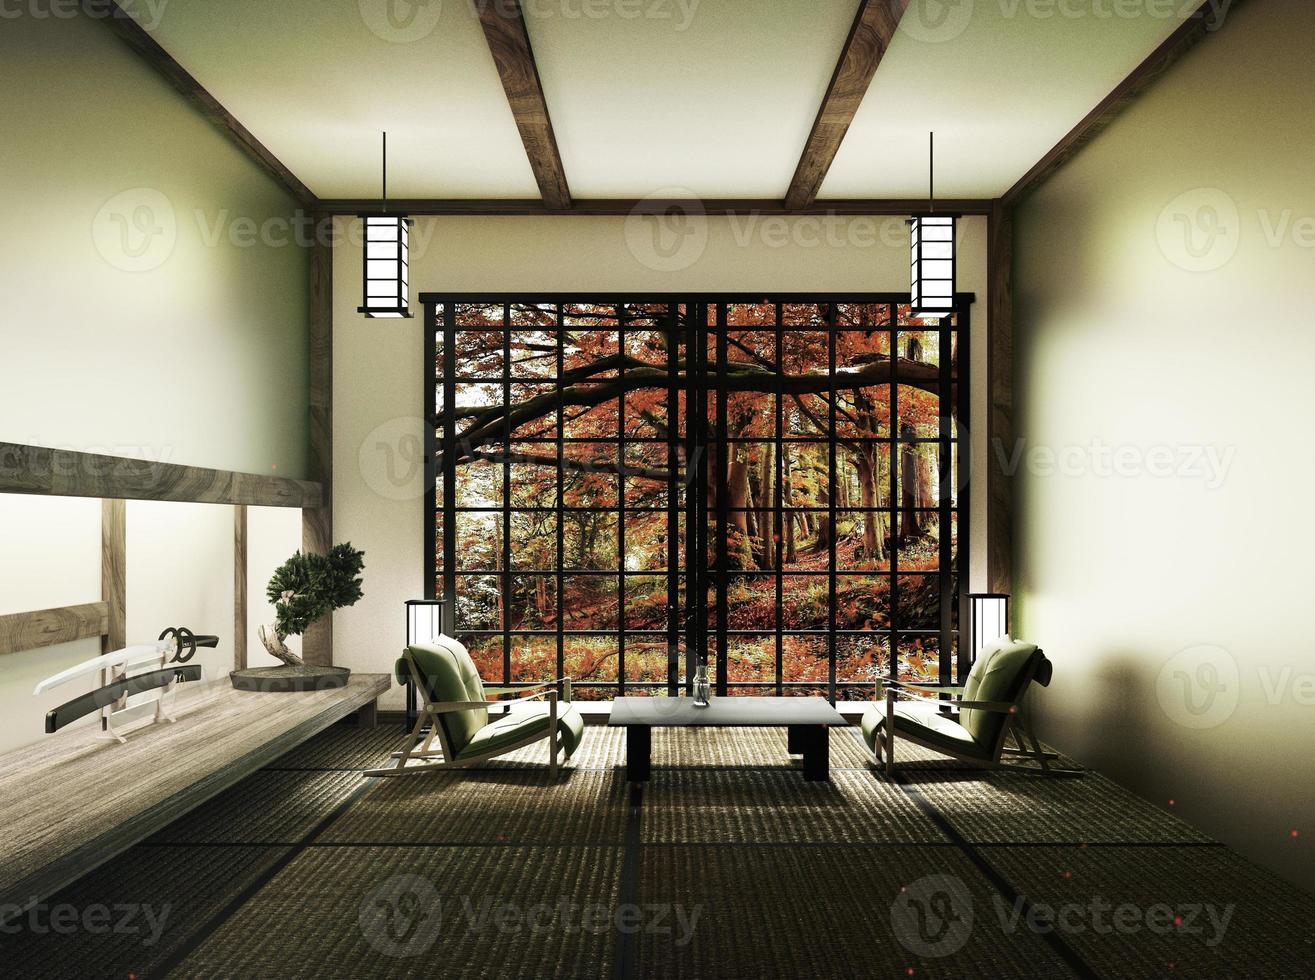 Frühlingszimmer mit Bonsai-Baum und niedrigem Tisch auf Tatami-Matte und Fensteransicht Frühlingsbaum, japanischer Stil. 3D-Rendering foto